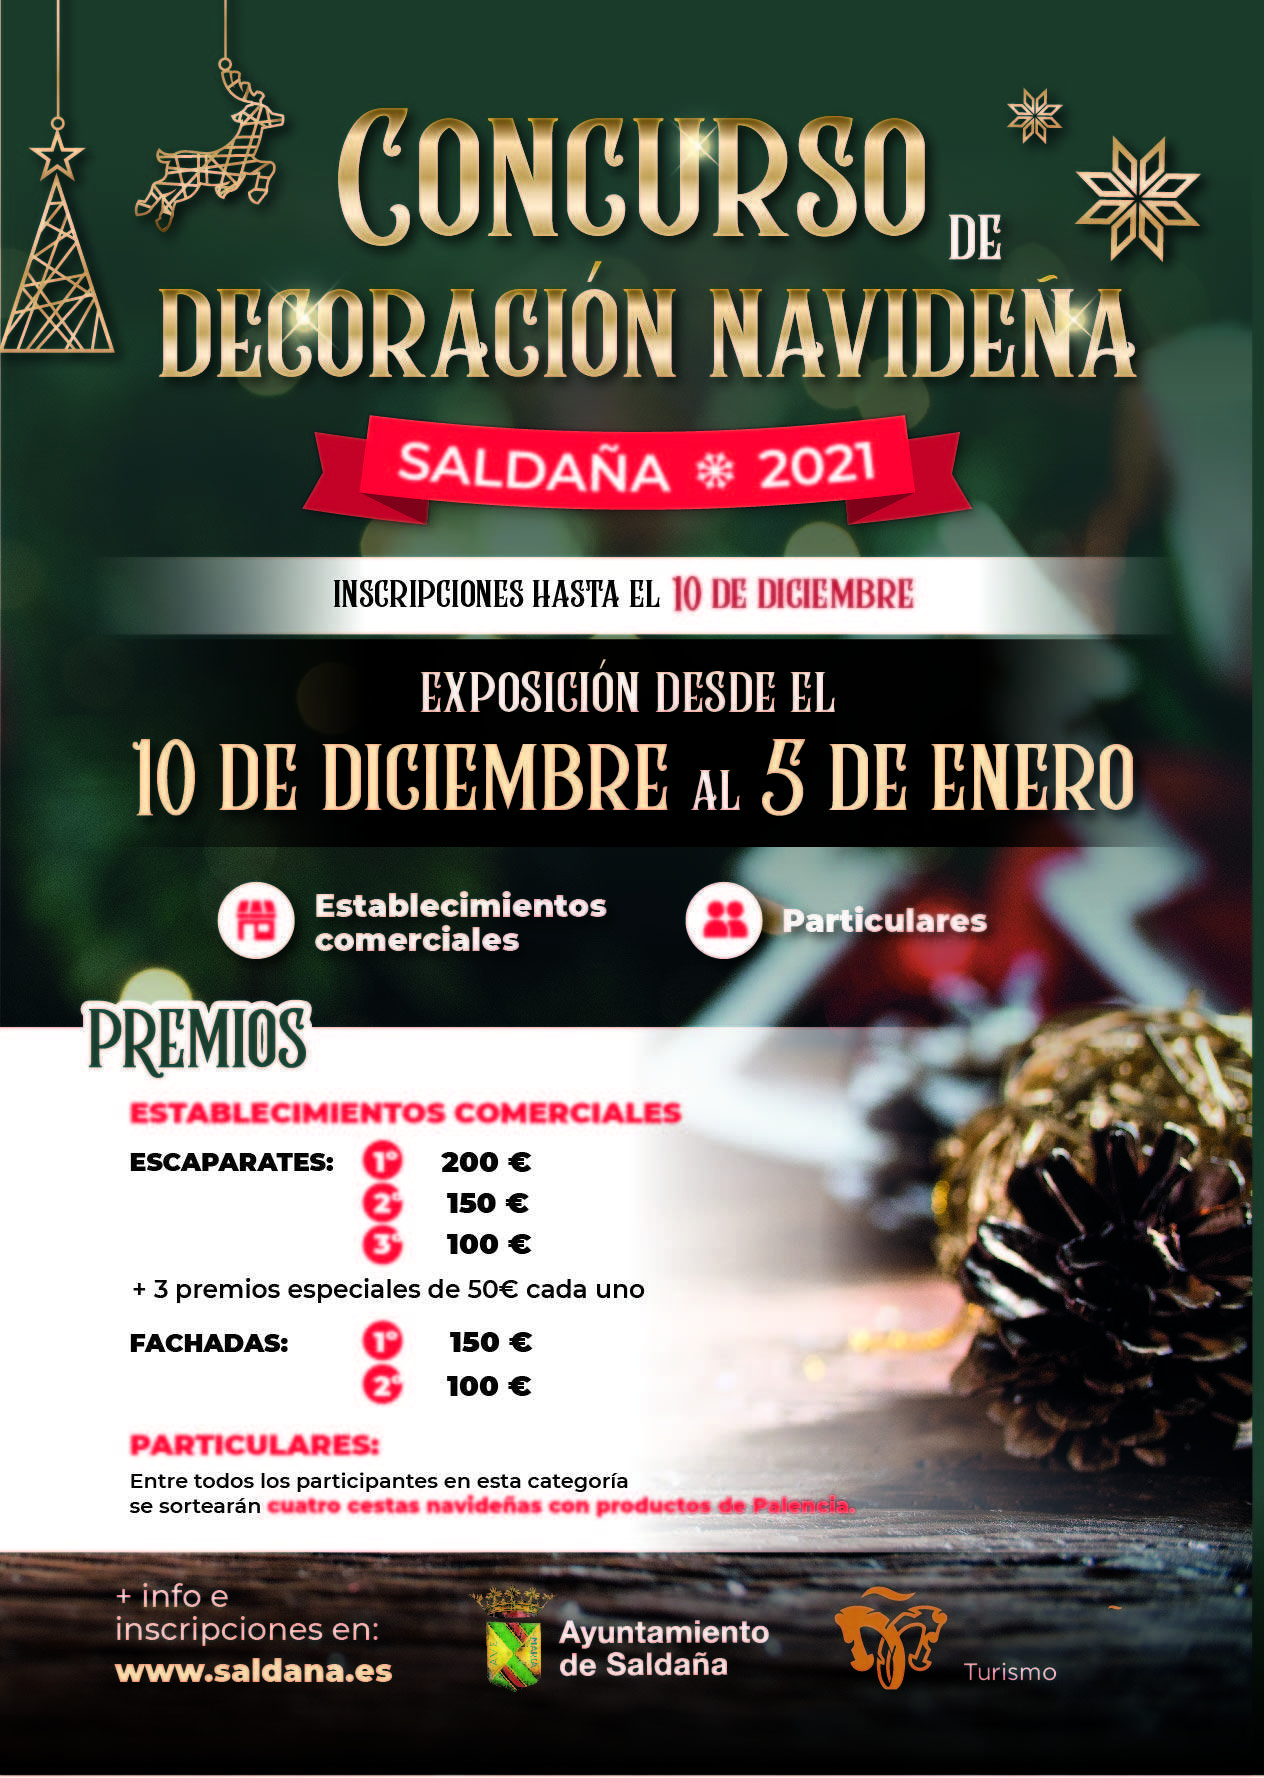 Concurso de decoración navideña (2021) - Saldaña (Palencia)